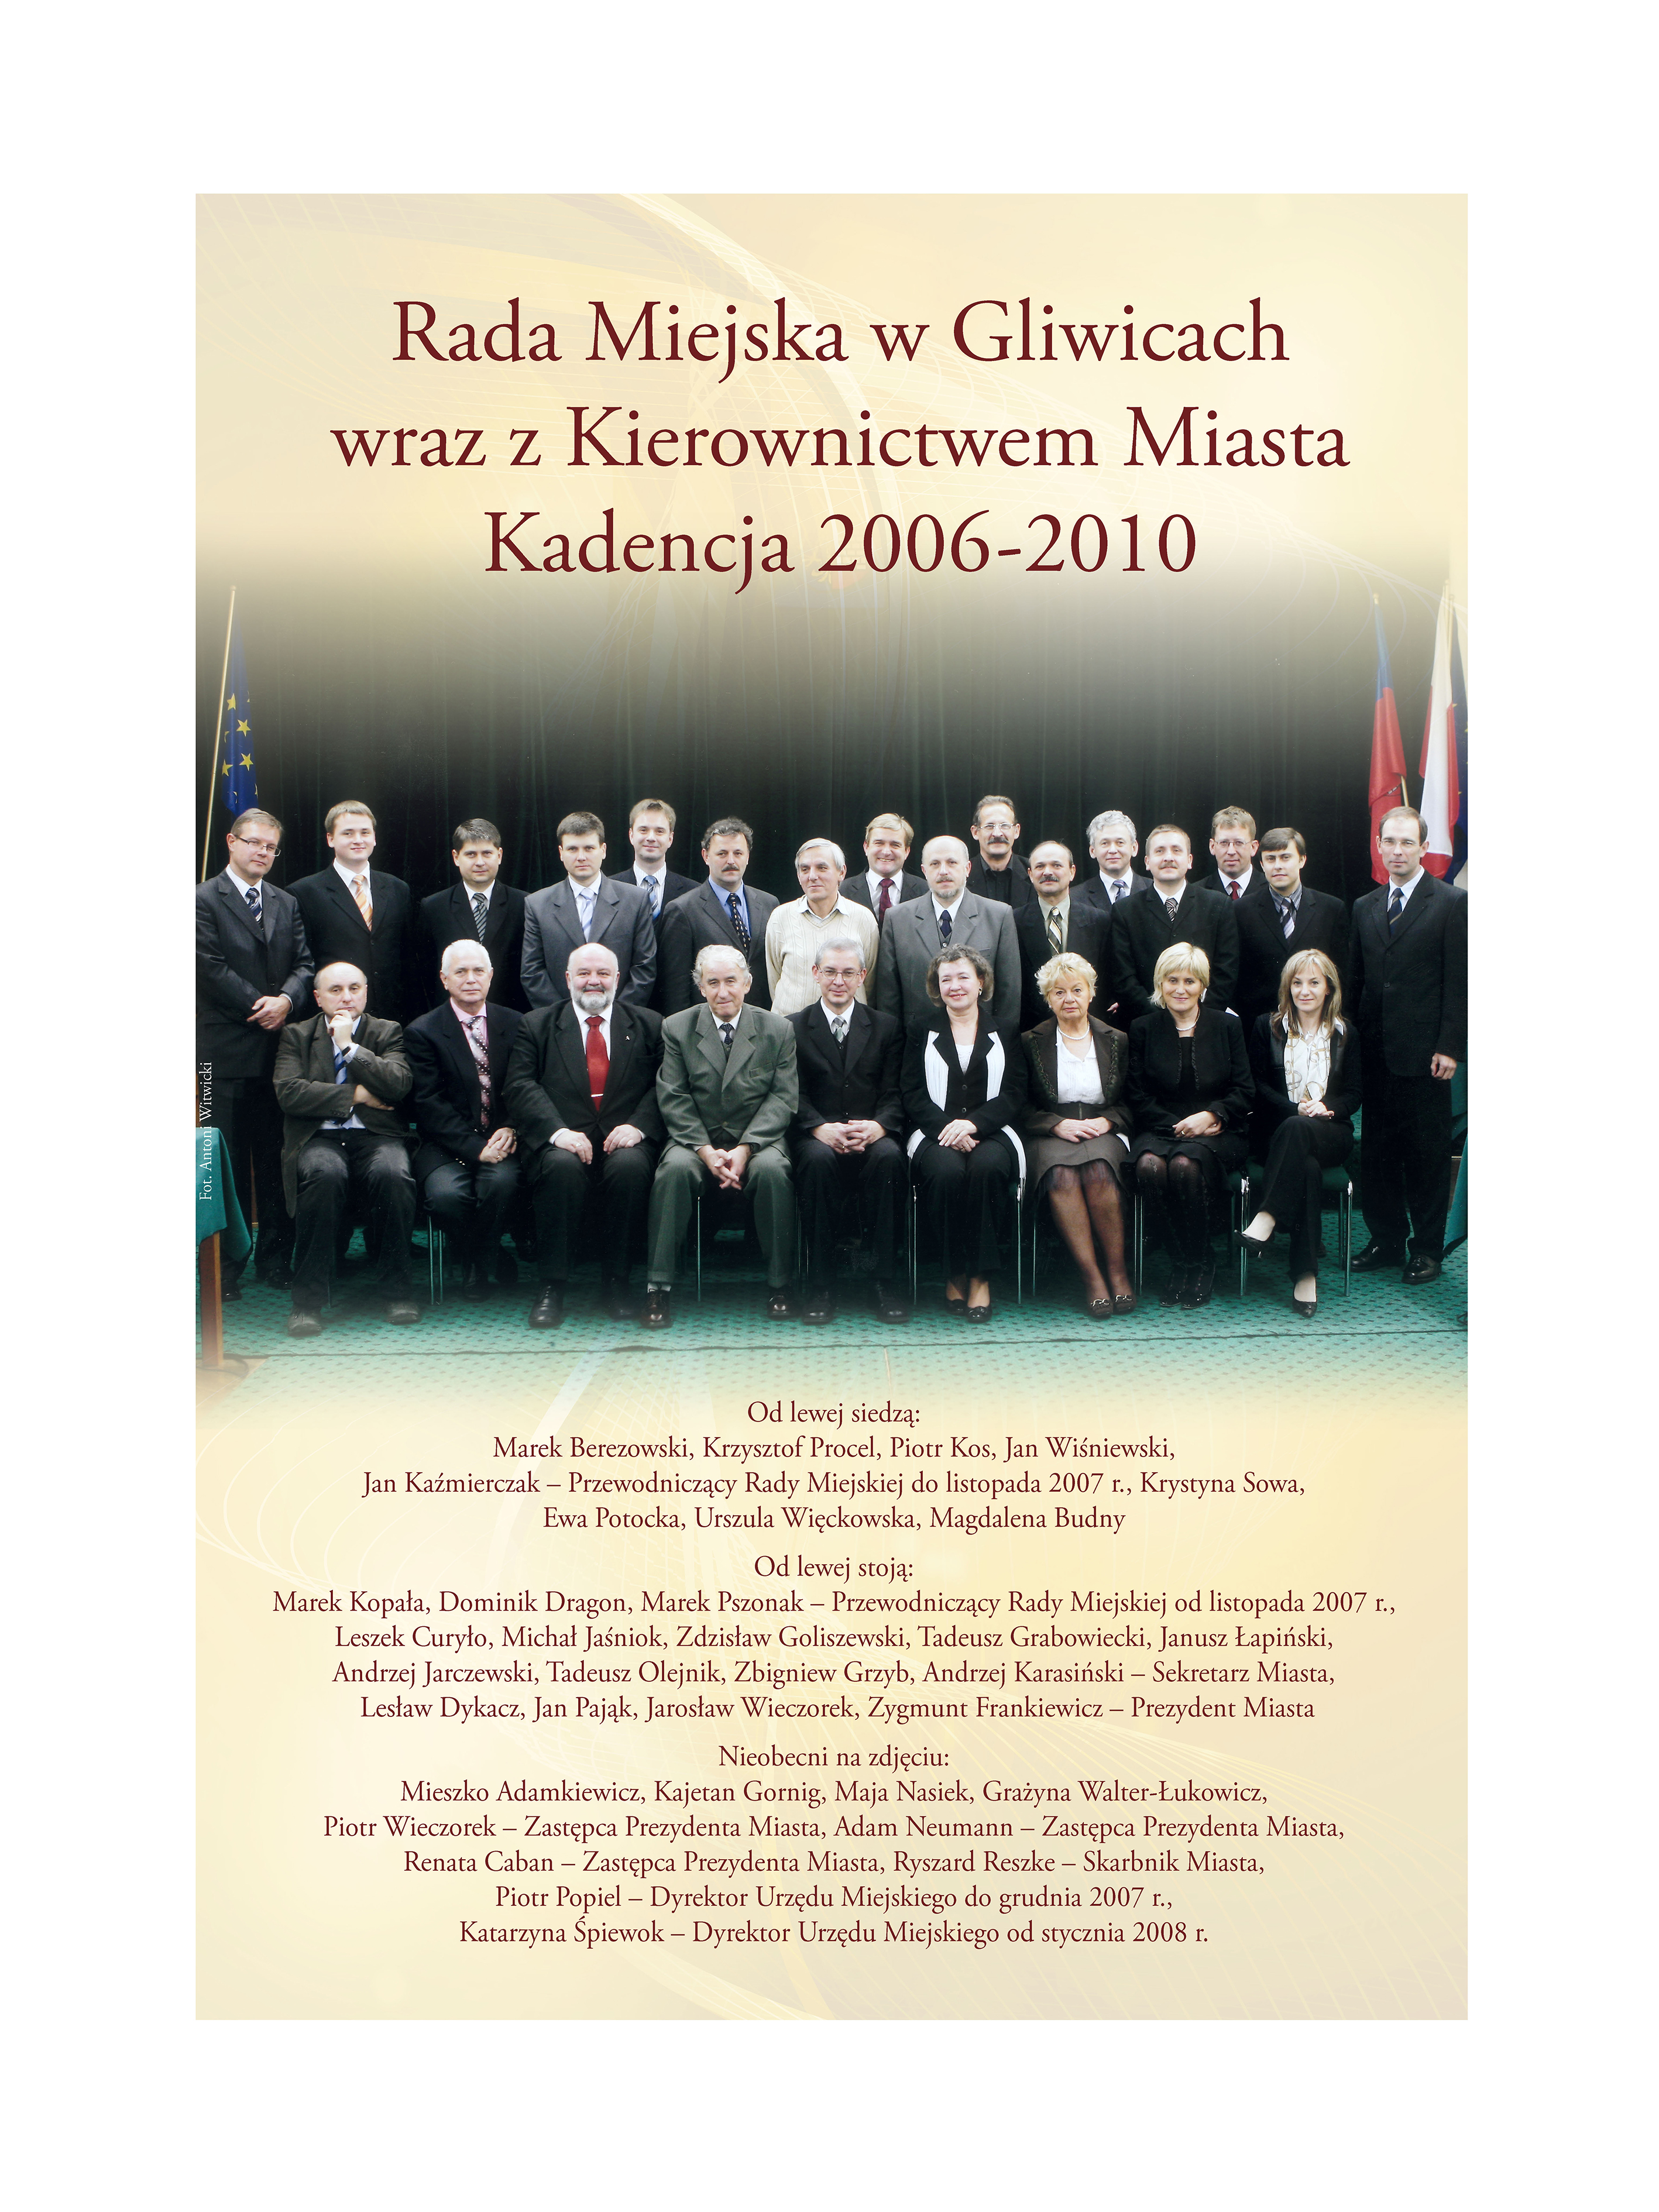 Zdjęcie Rady Miejskiej w Gliwicach wraz z Kierownictwem Miasta